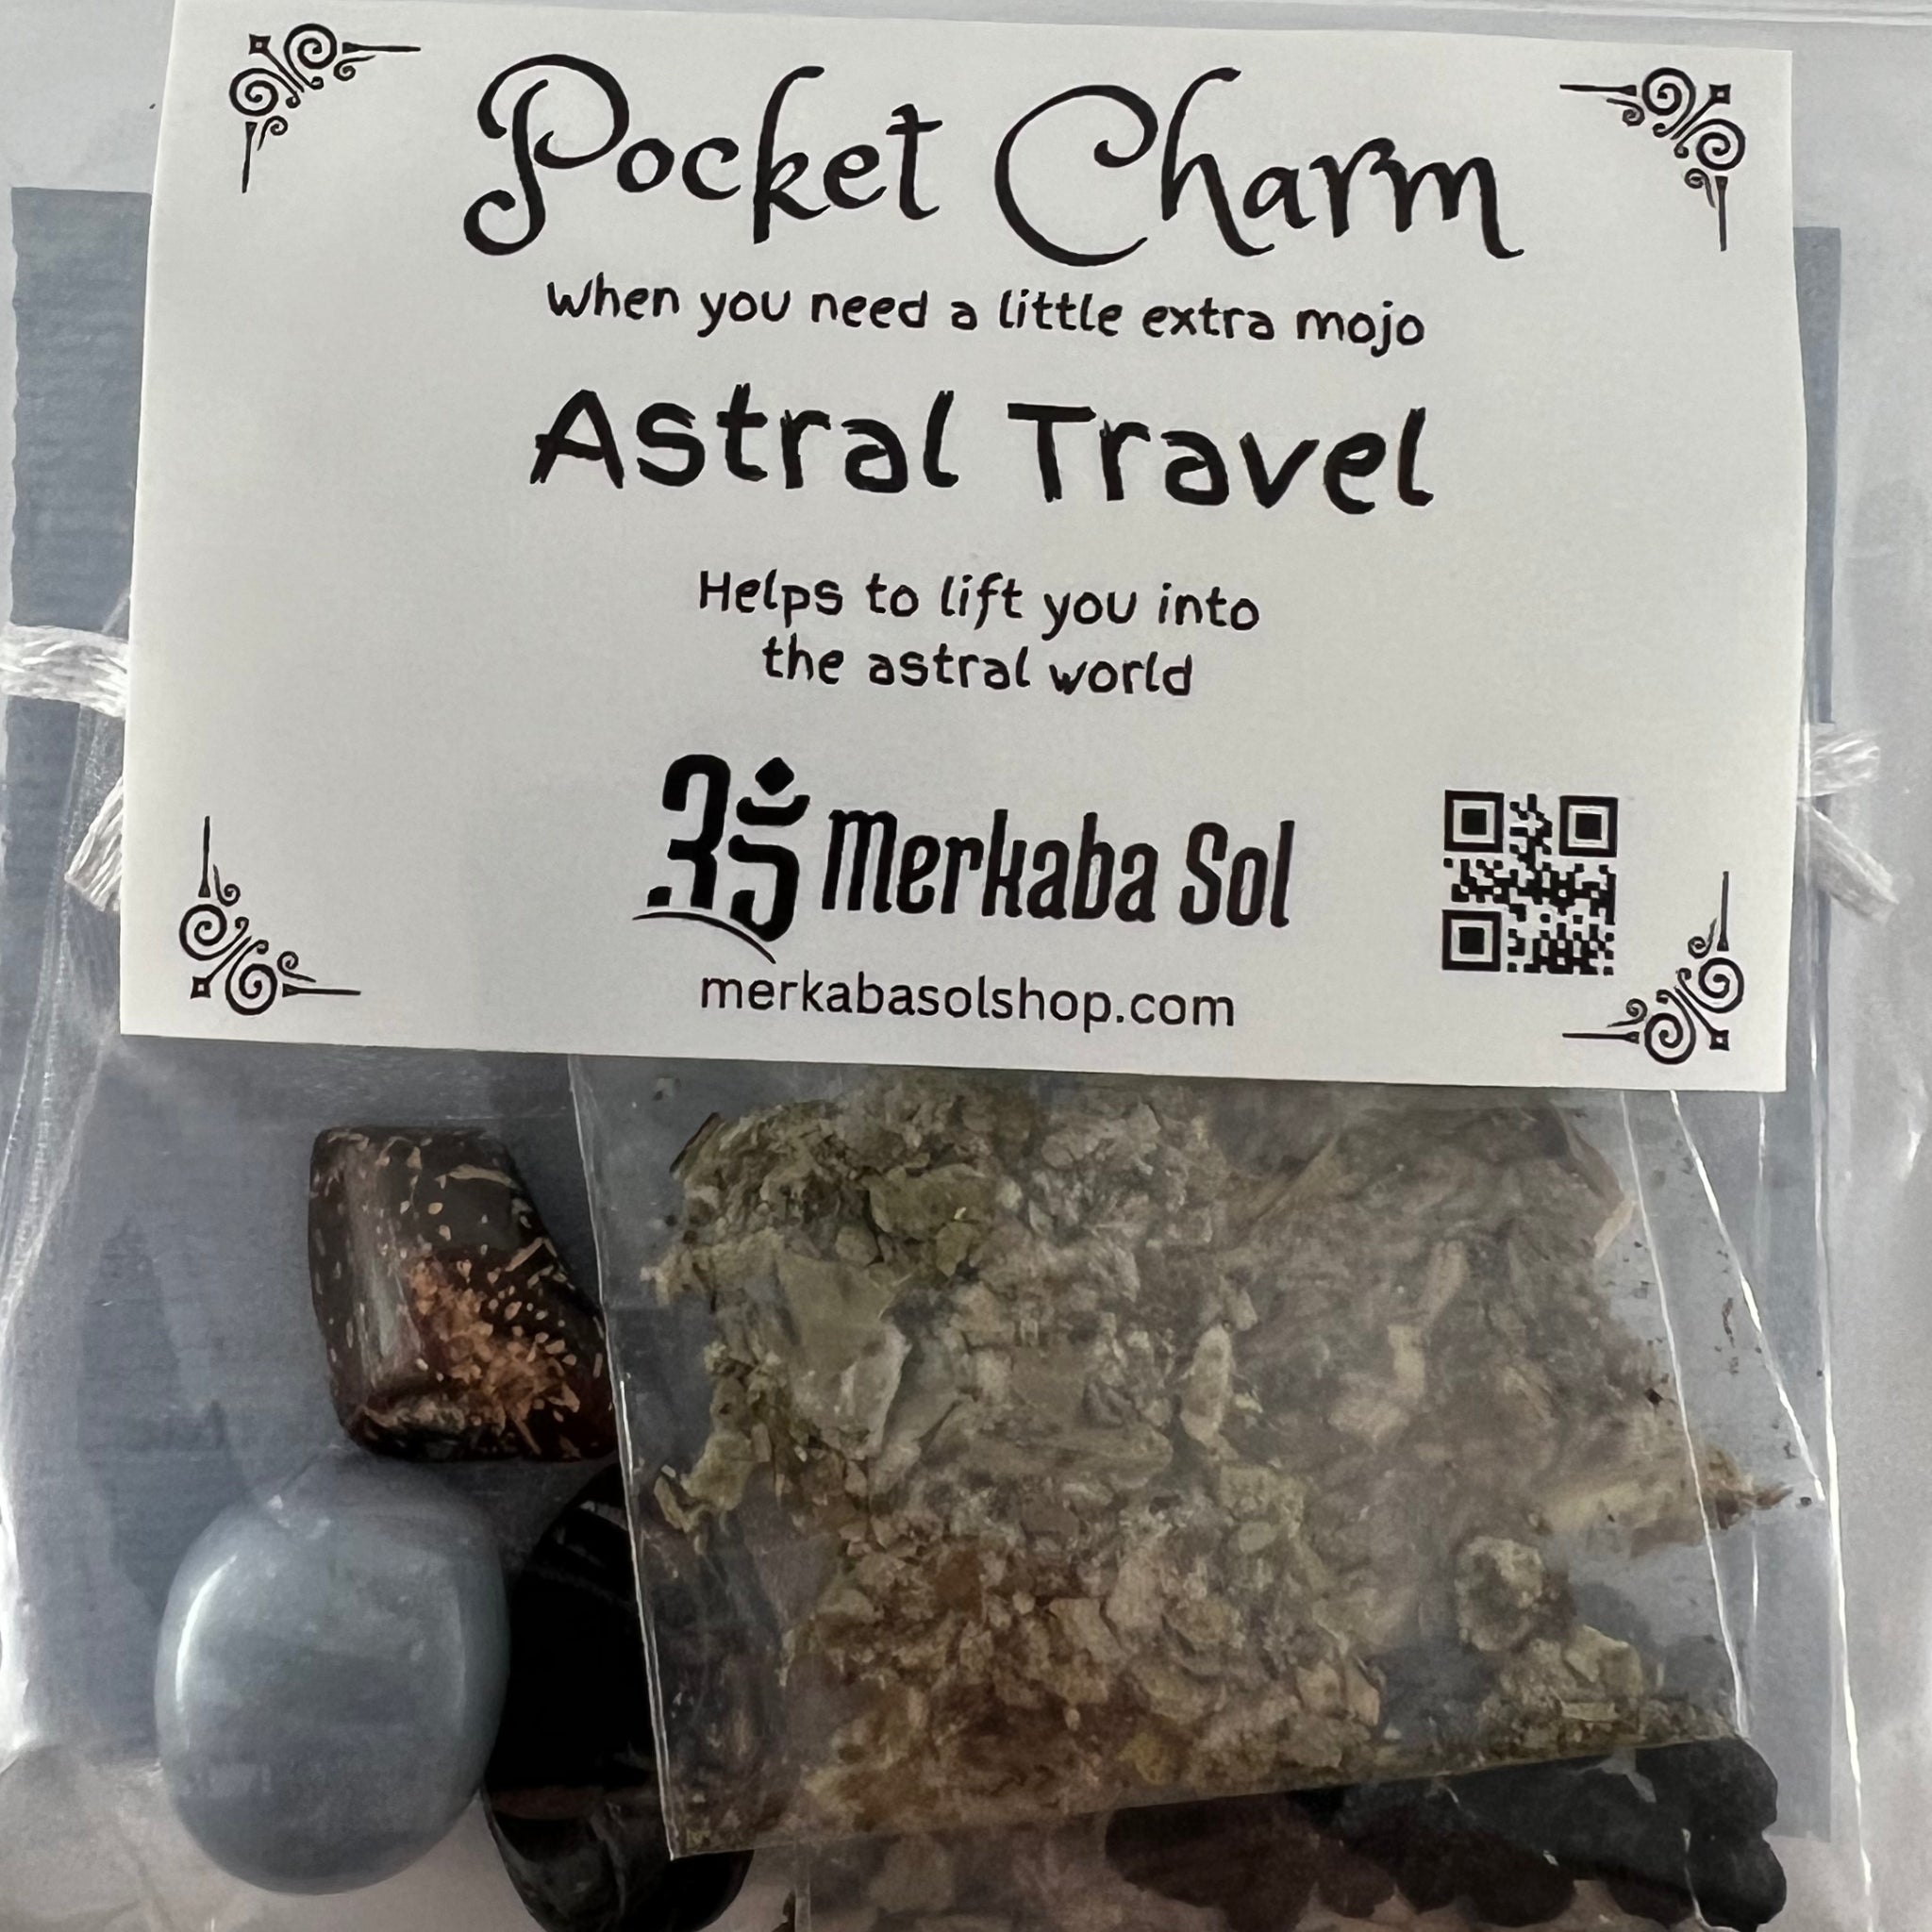 Astral Travel Pocket Charm Kit